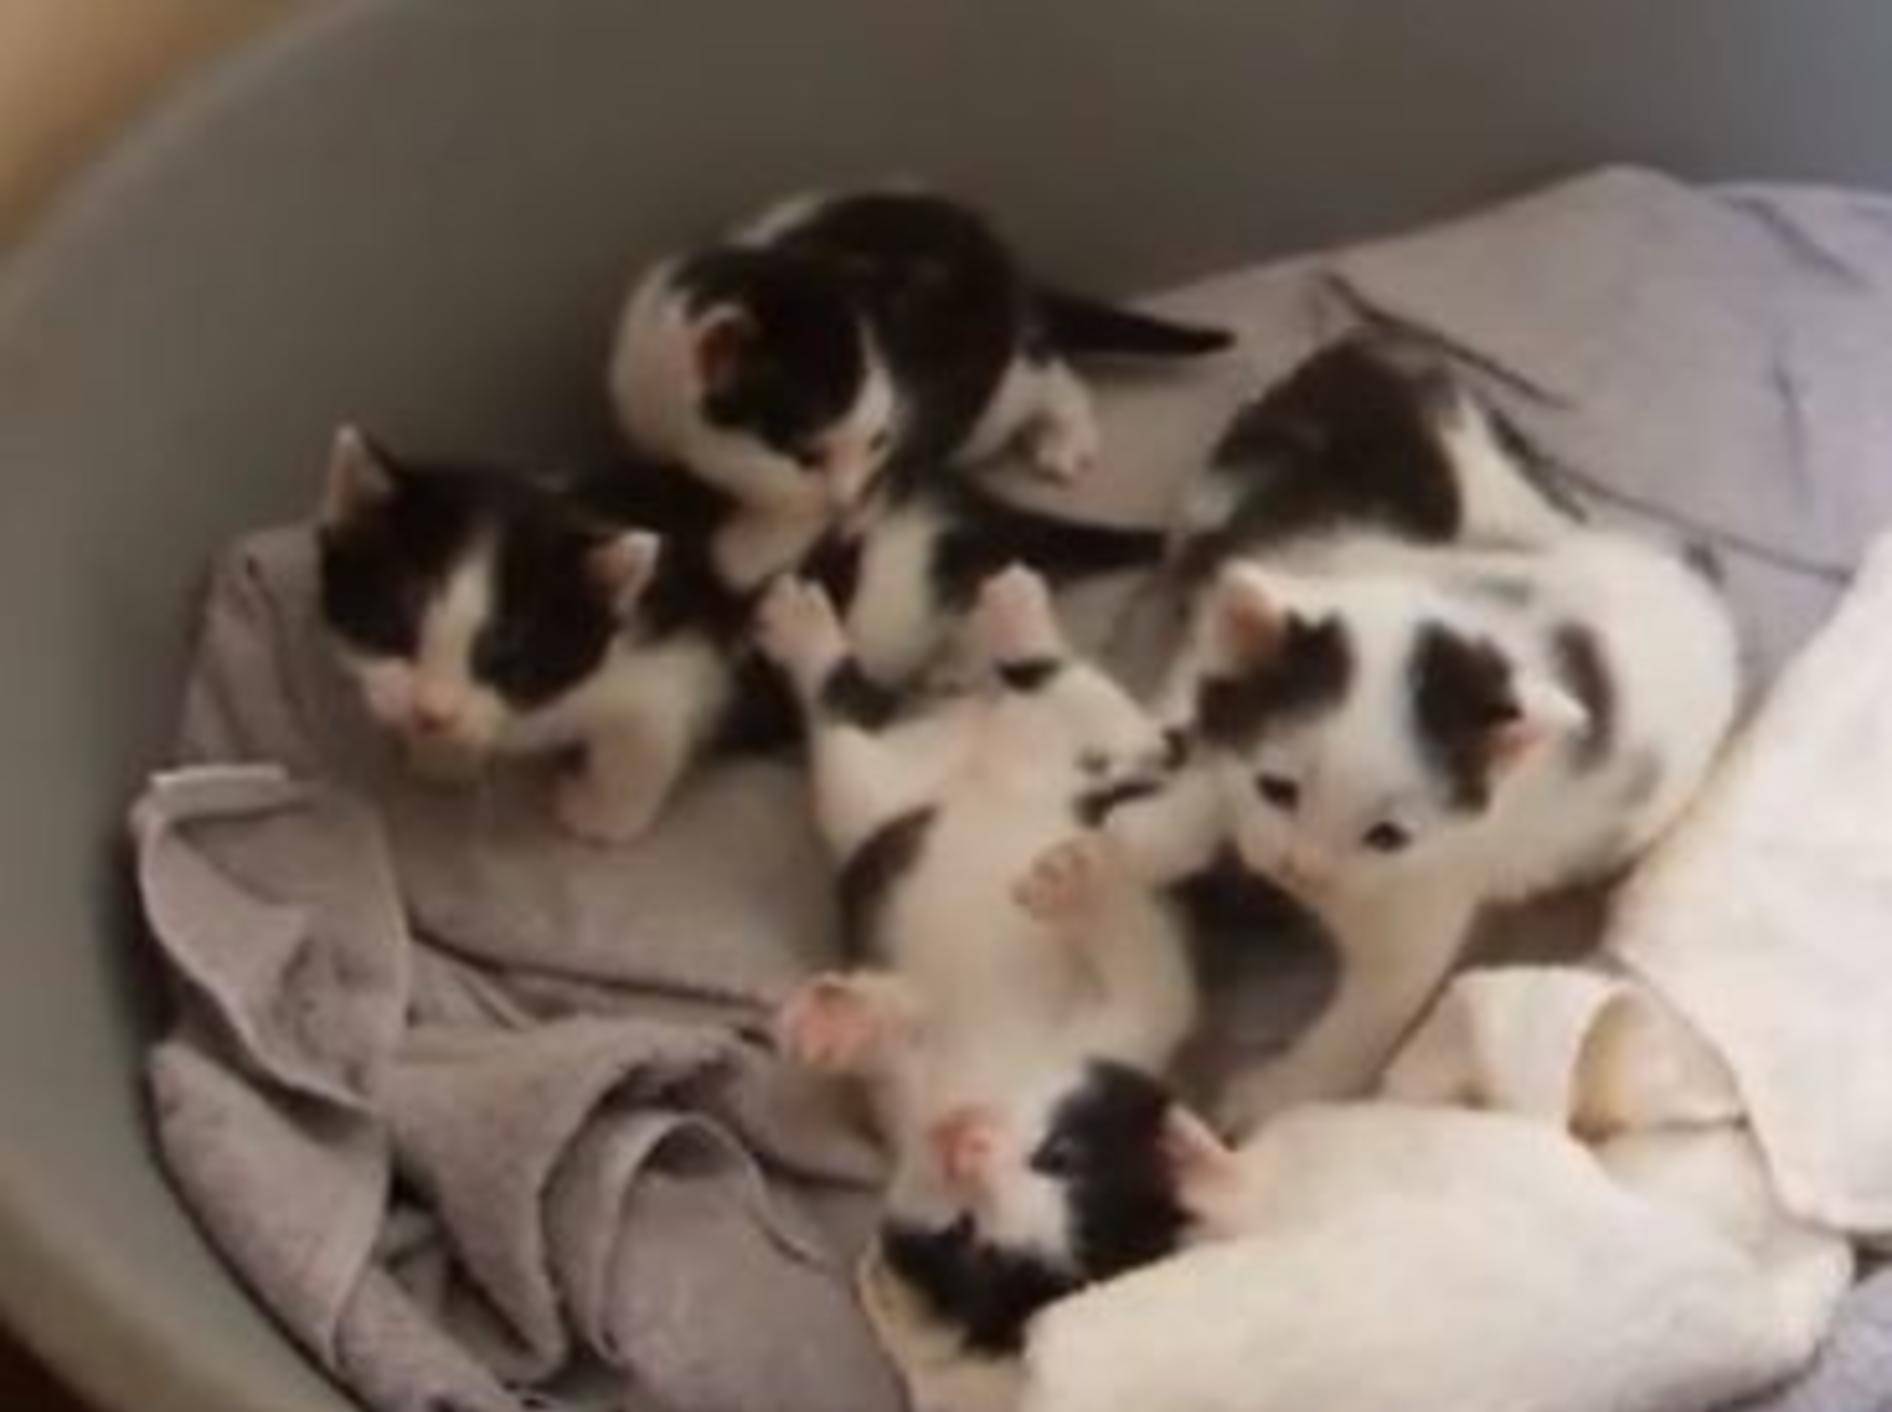 Kleine Kuhmuster-Kätzchen kuscheln um die Wette — Bild: Youtube / tigercat98